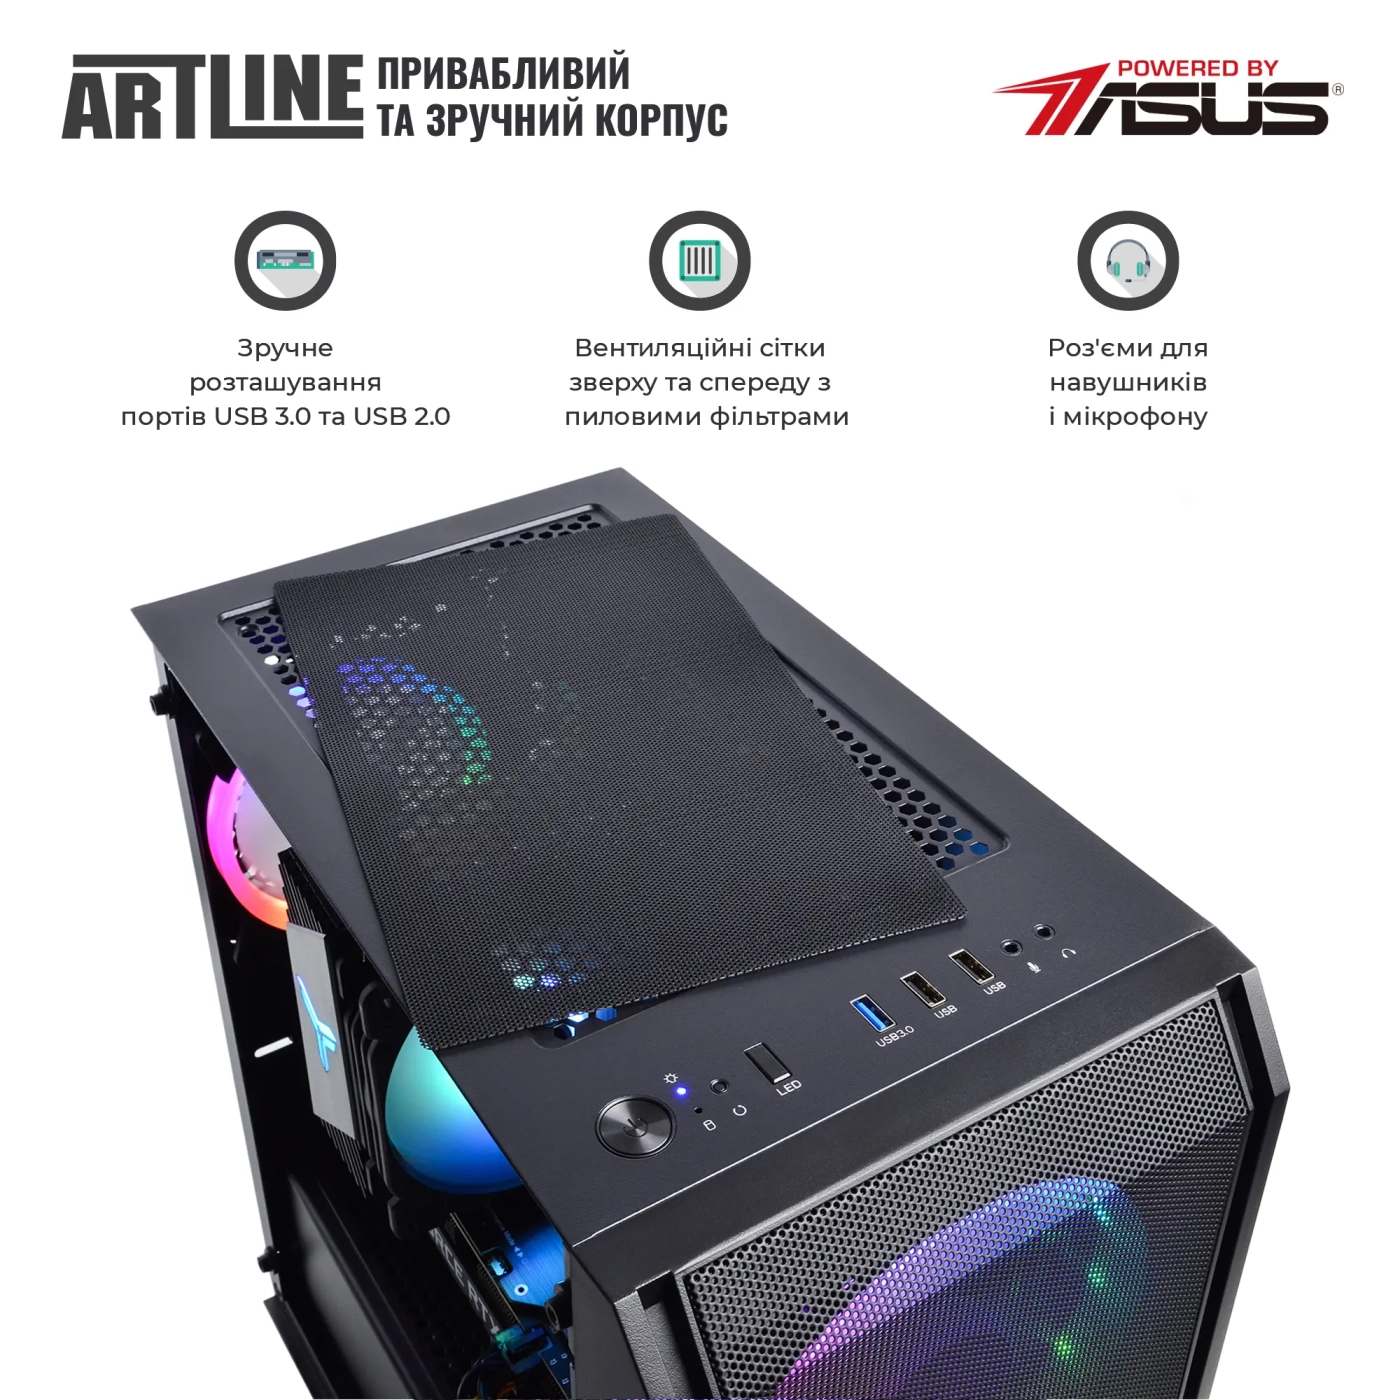 Купить Компьютер ARTLINE Gaming X57v52 - фото 6